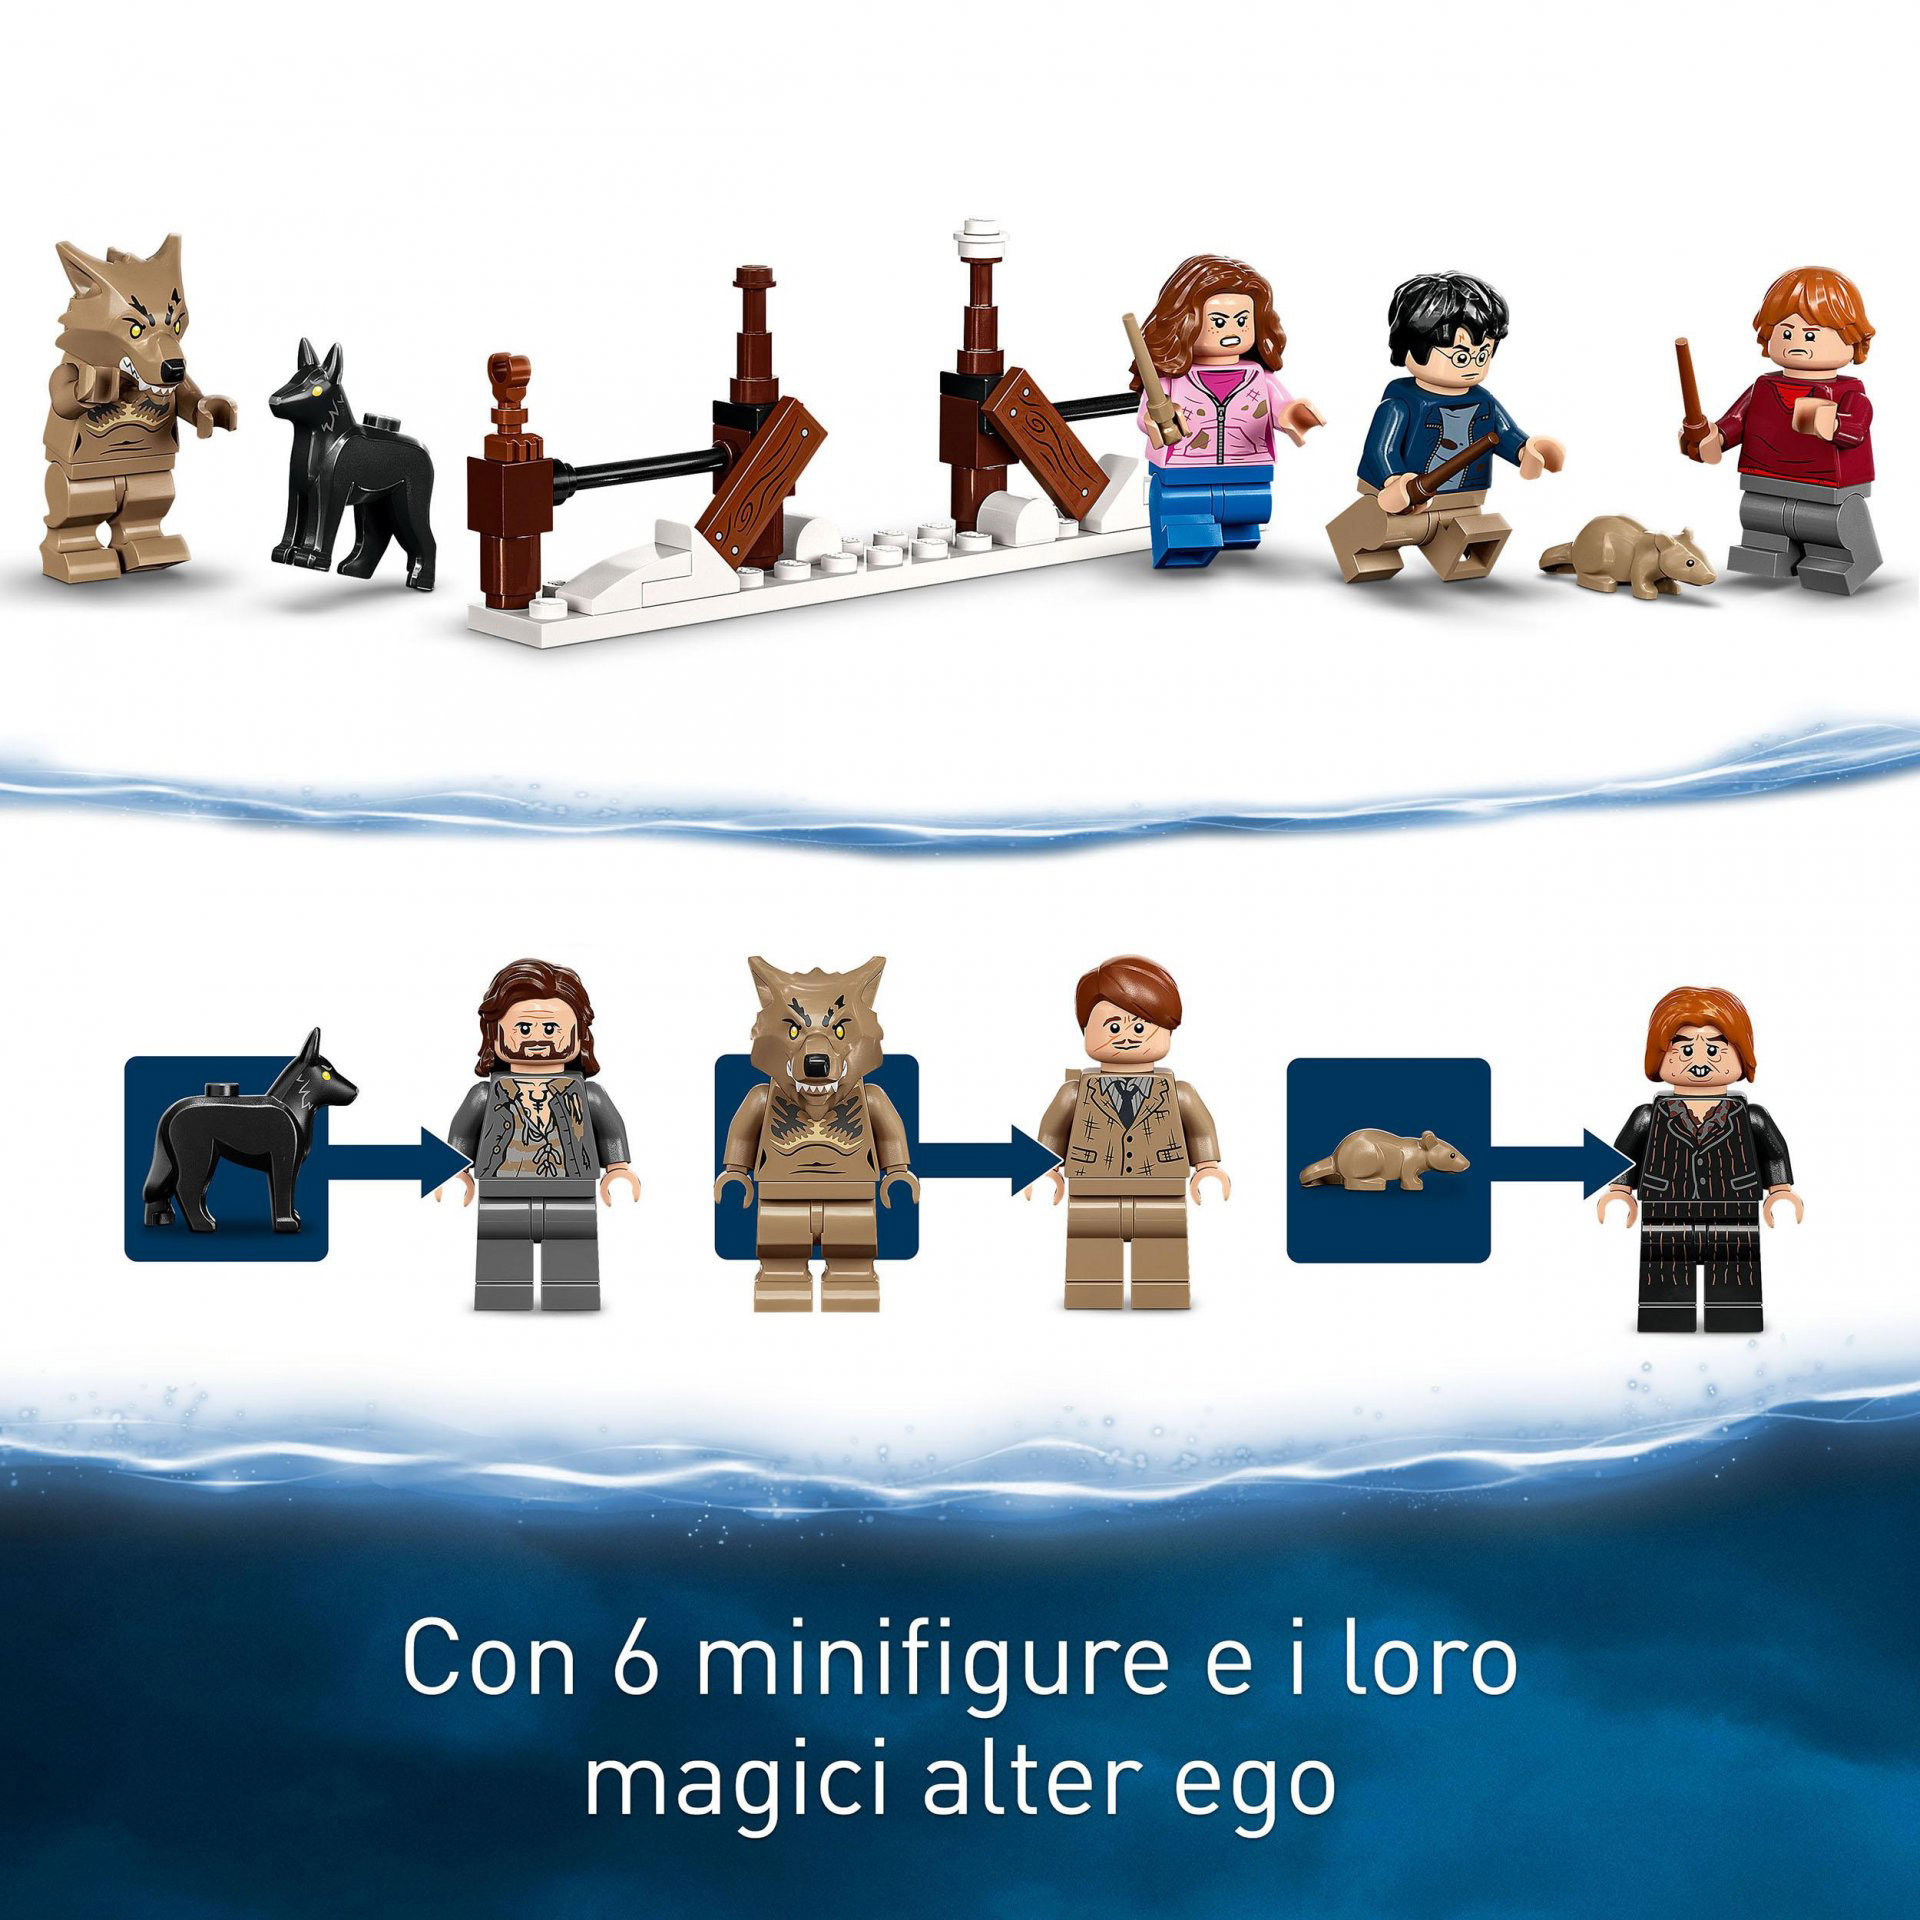 LEGO Harry Potter La Stamberga Strillante e il Platano Picchiatore, Mondo Magico 76407, , large